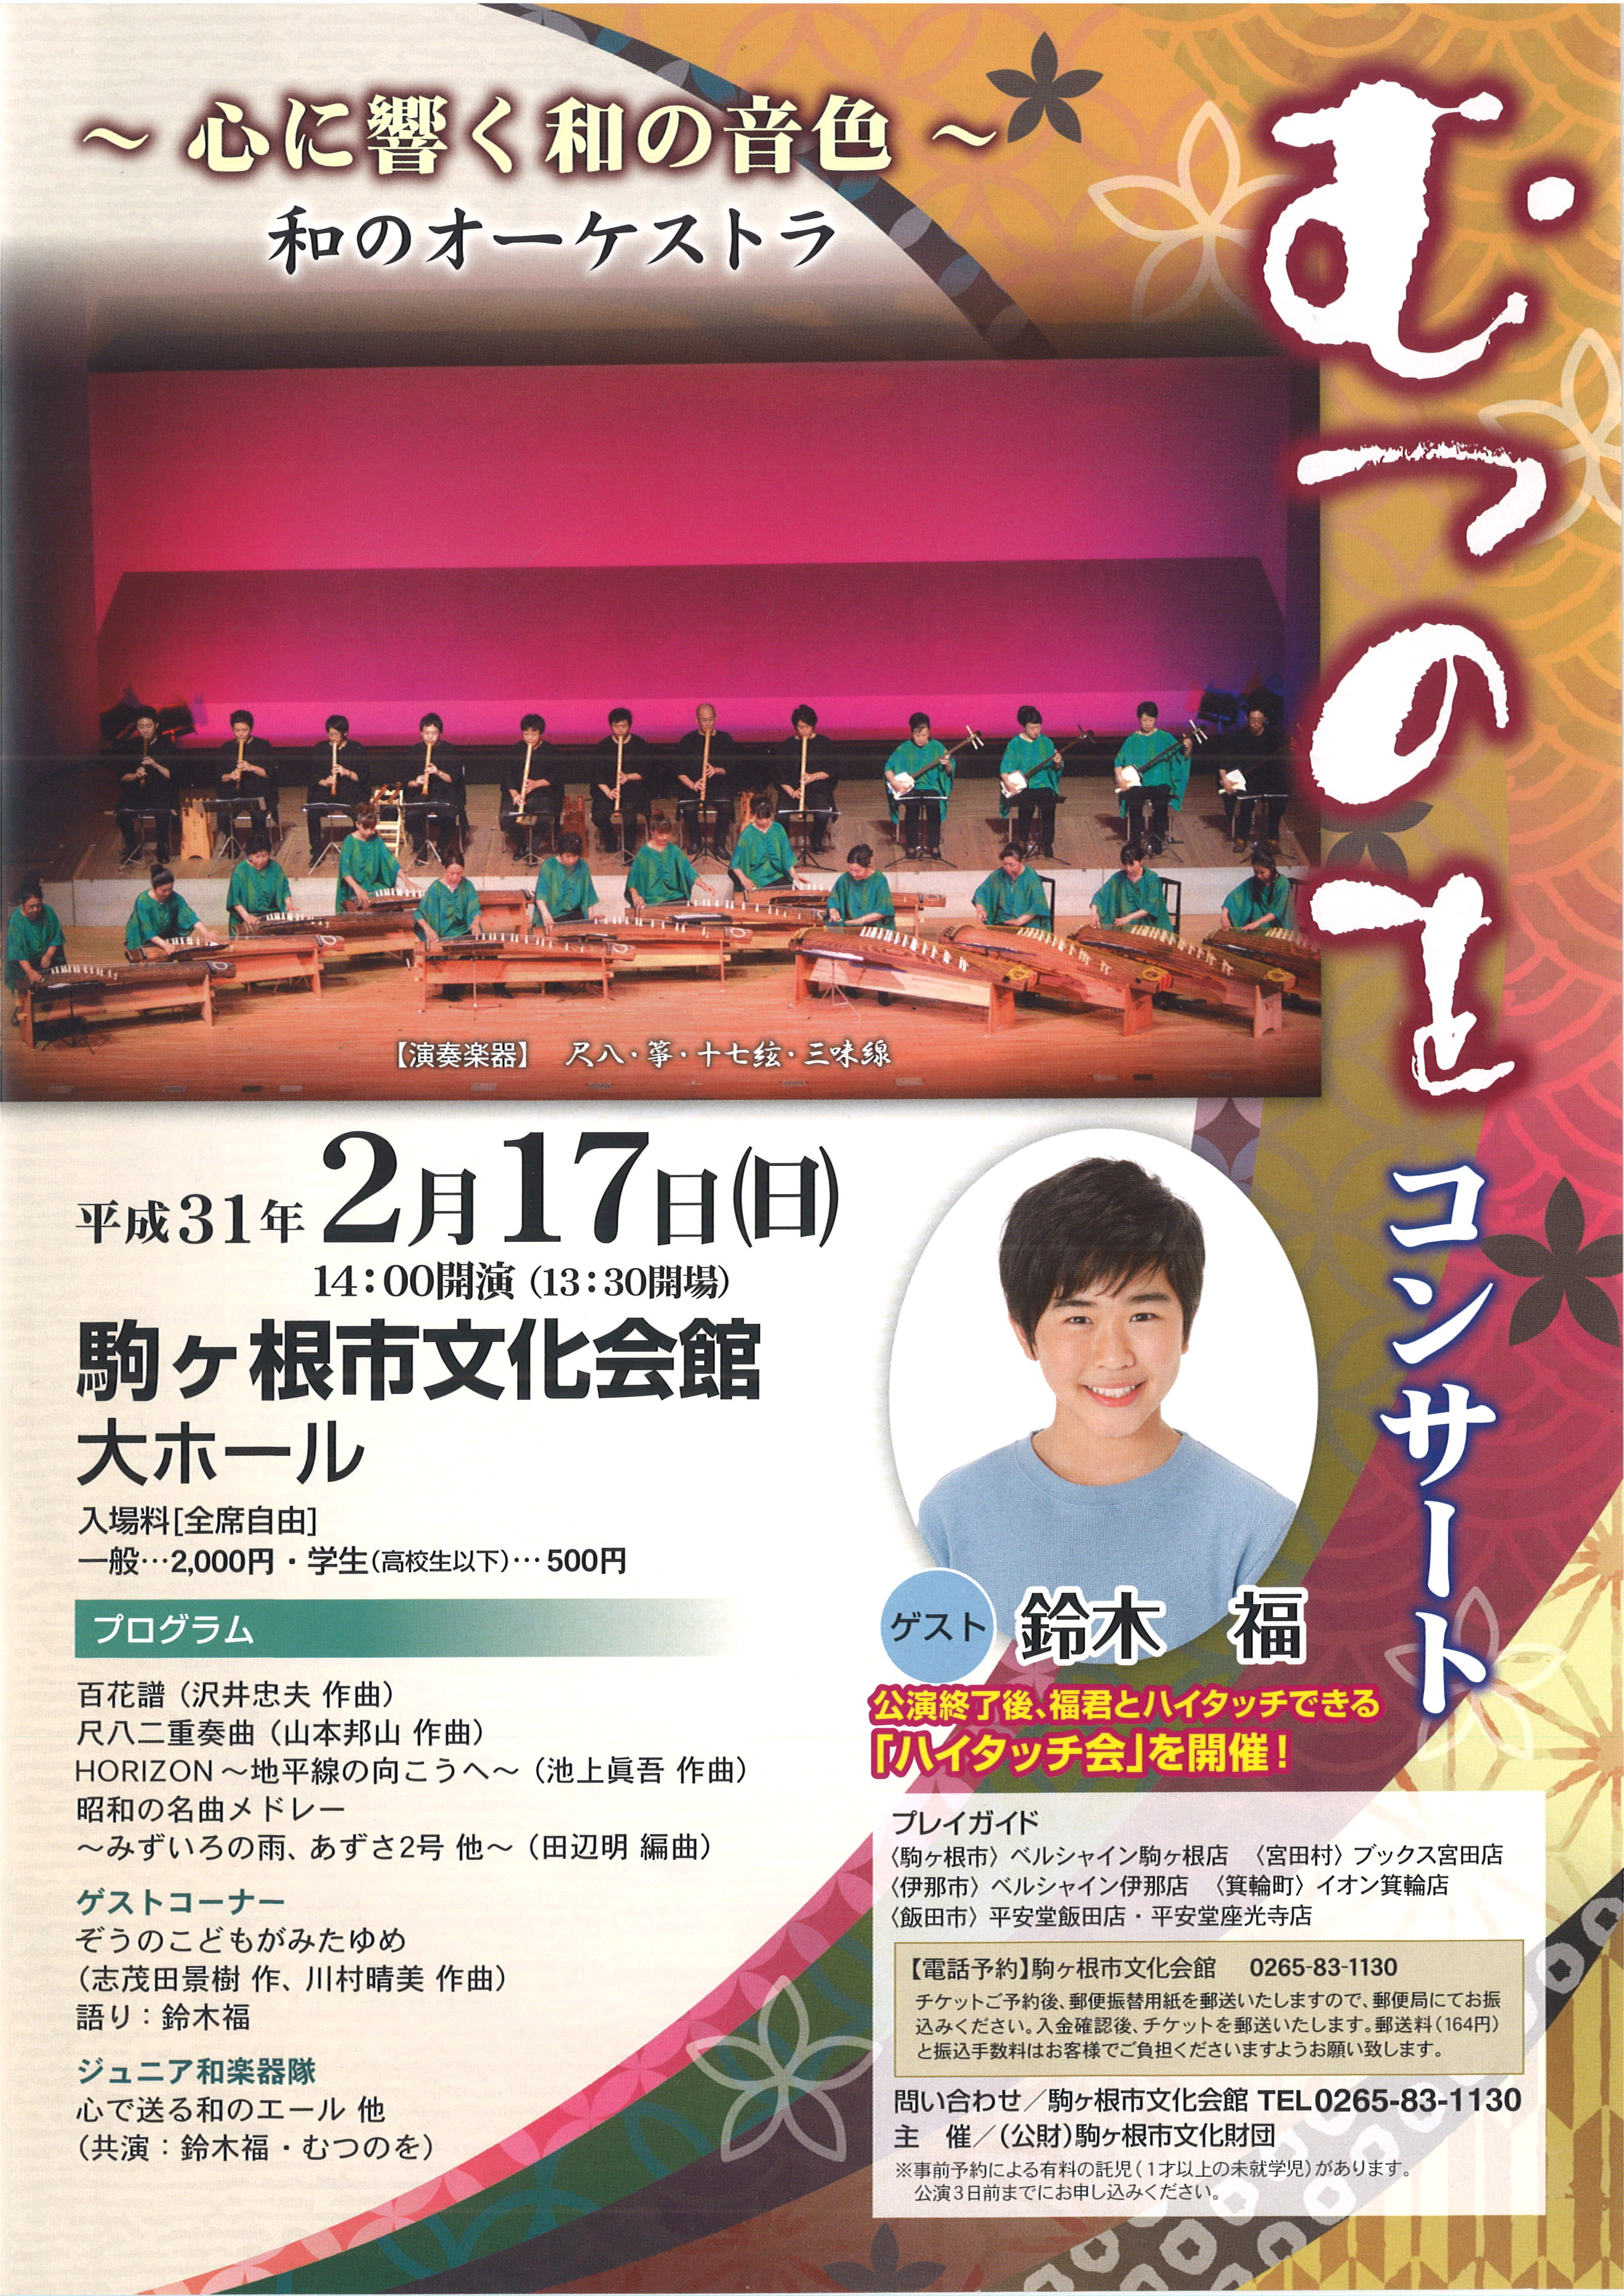 和のオーケストラ むつのをコンサート 駒ヶ根総合文化センター